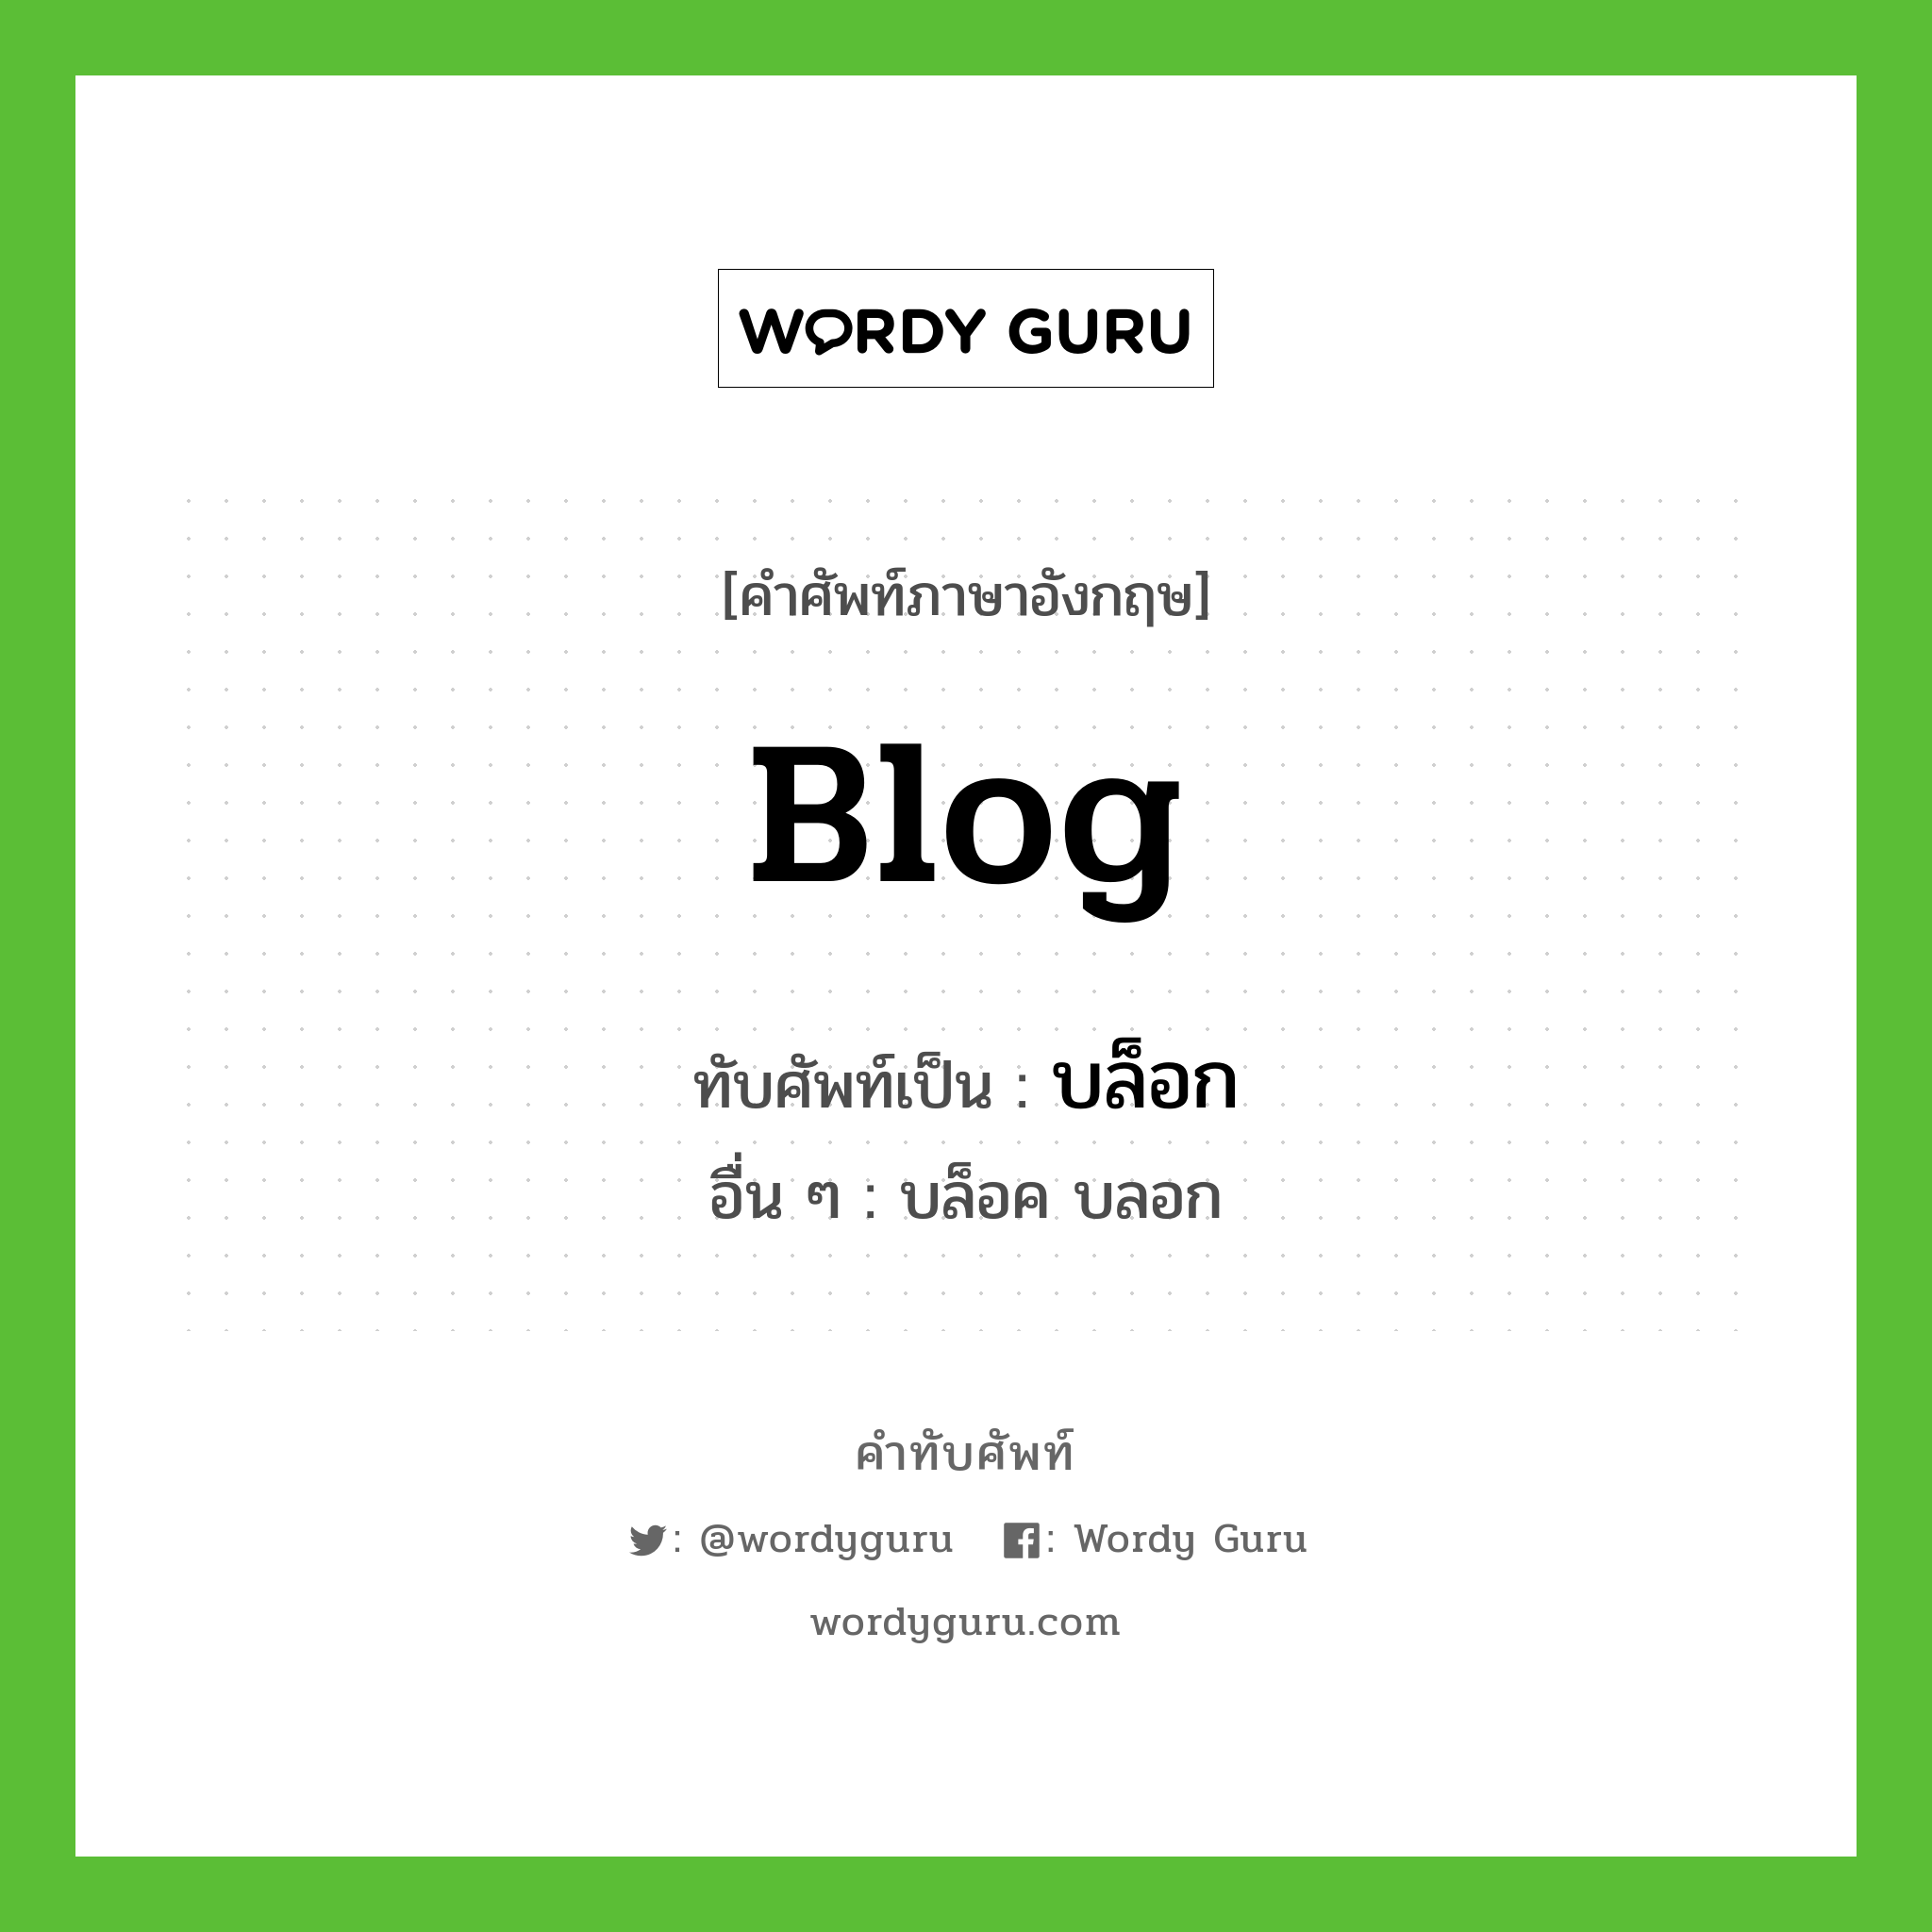 blog เขียนเป็นคำไทยว่าอะไร?, คำศัพท์ภาษาอังกฤษ blog ทับศัพท์เป็น บล็อก อื่น ๆ บล็อค บลอก